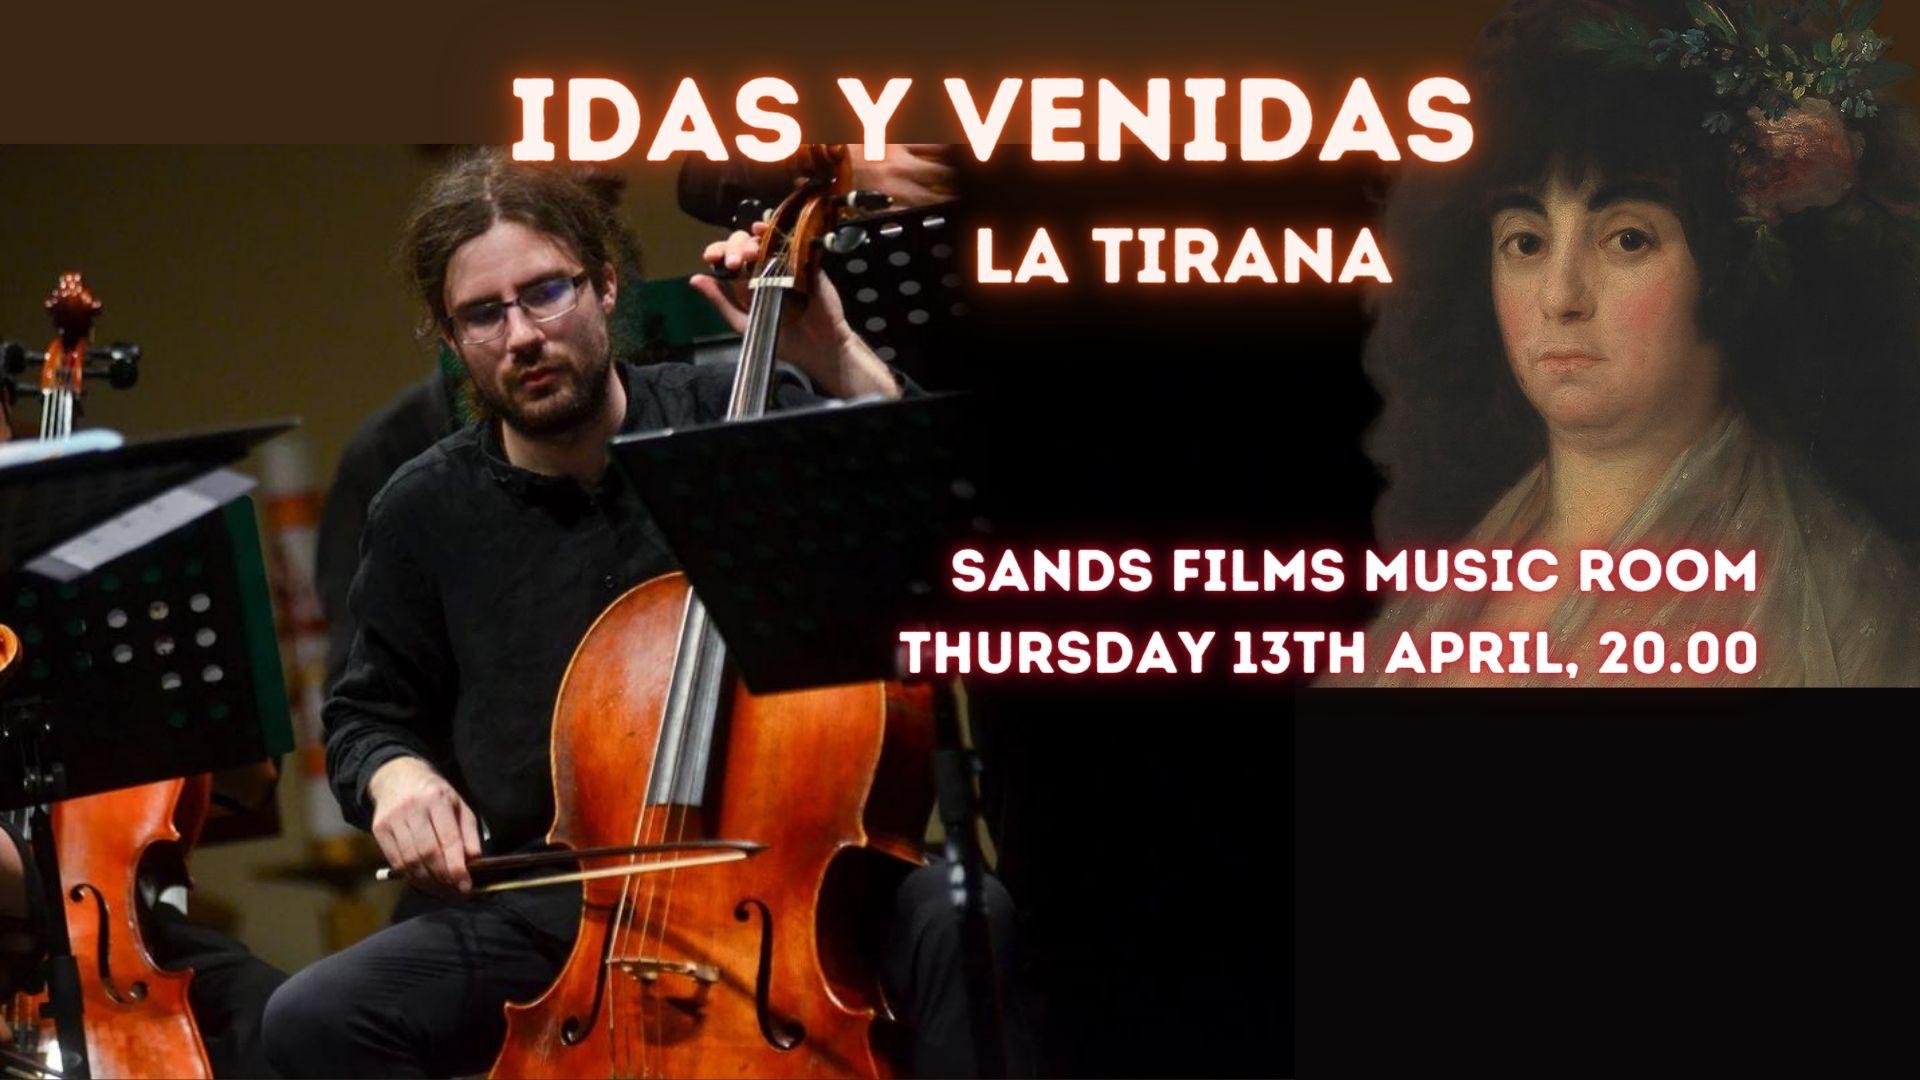 La Tirana: IDAS Y VENIDAS ~ Live Broadcast